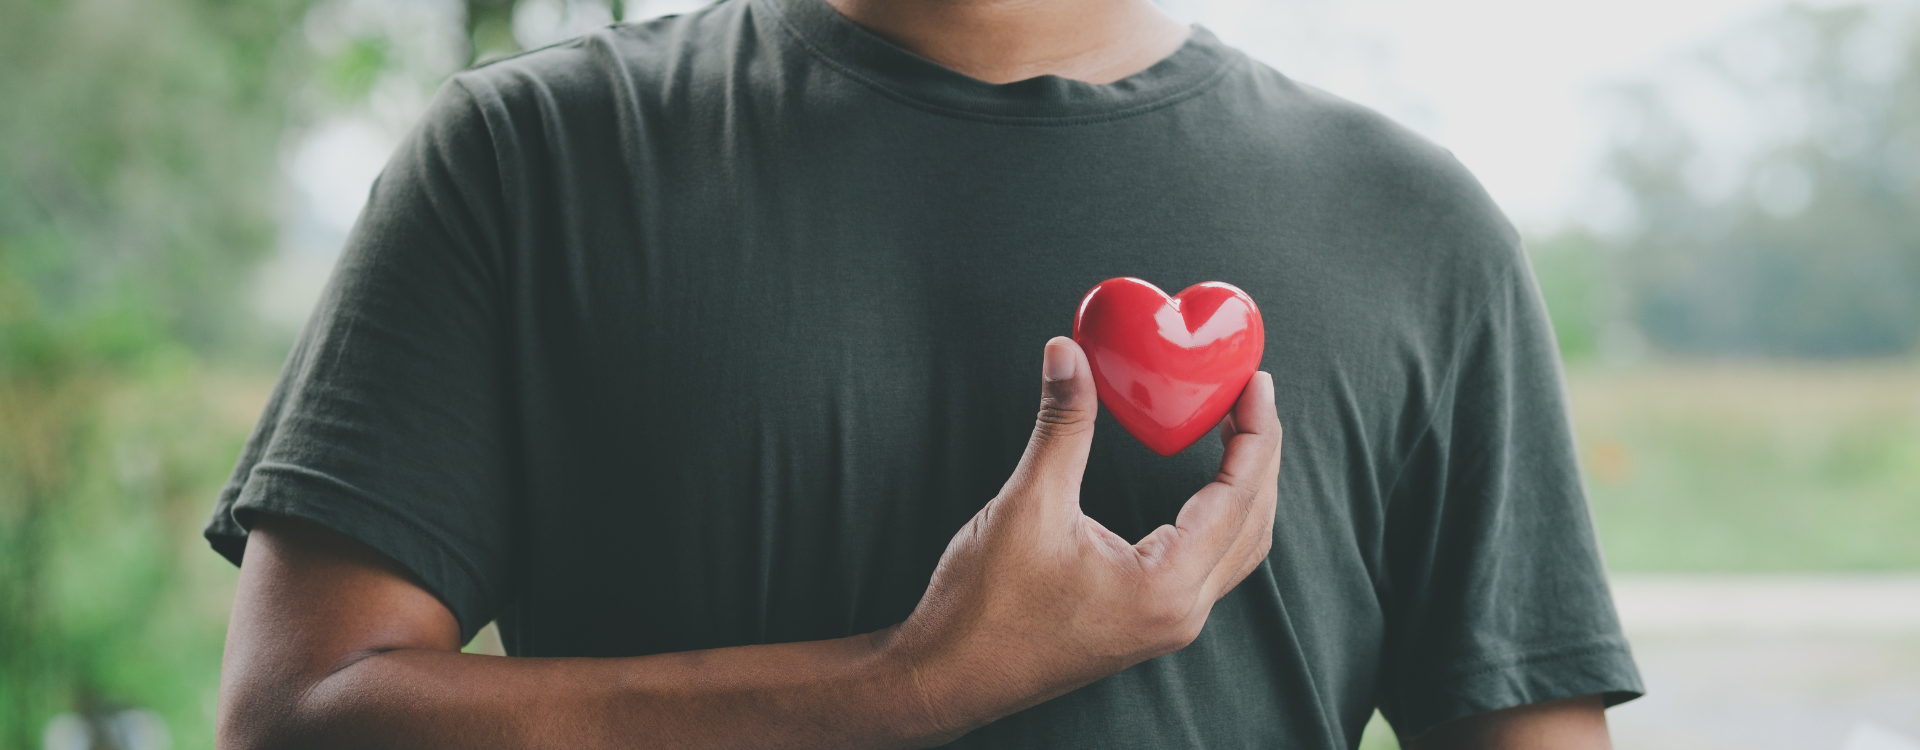 Serce, jego rola i alternatywne metody leczenia